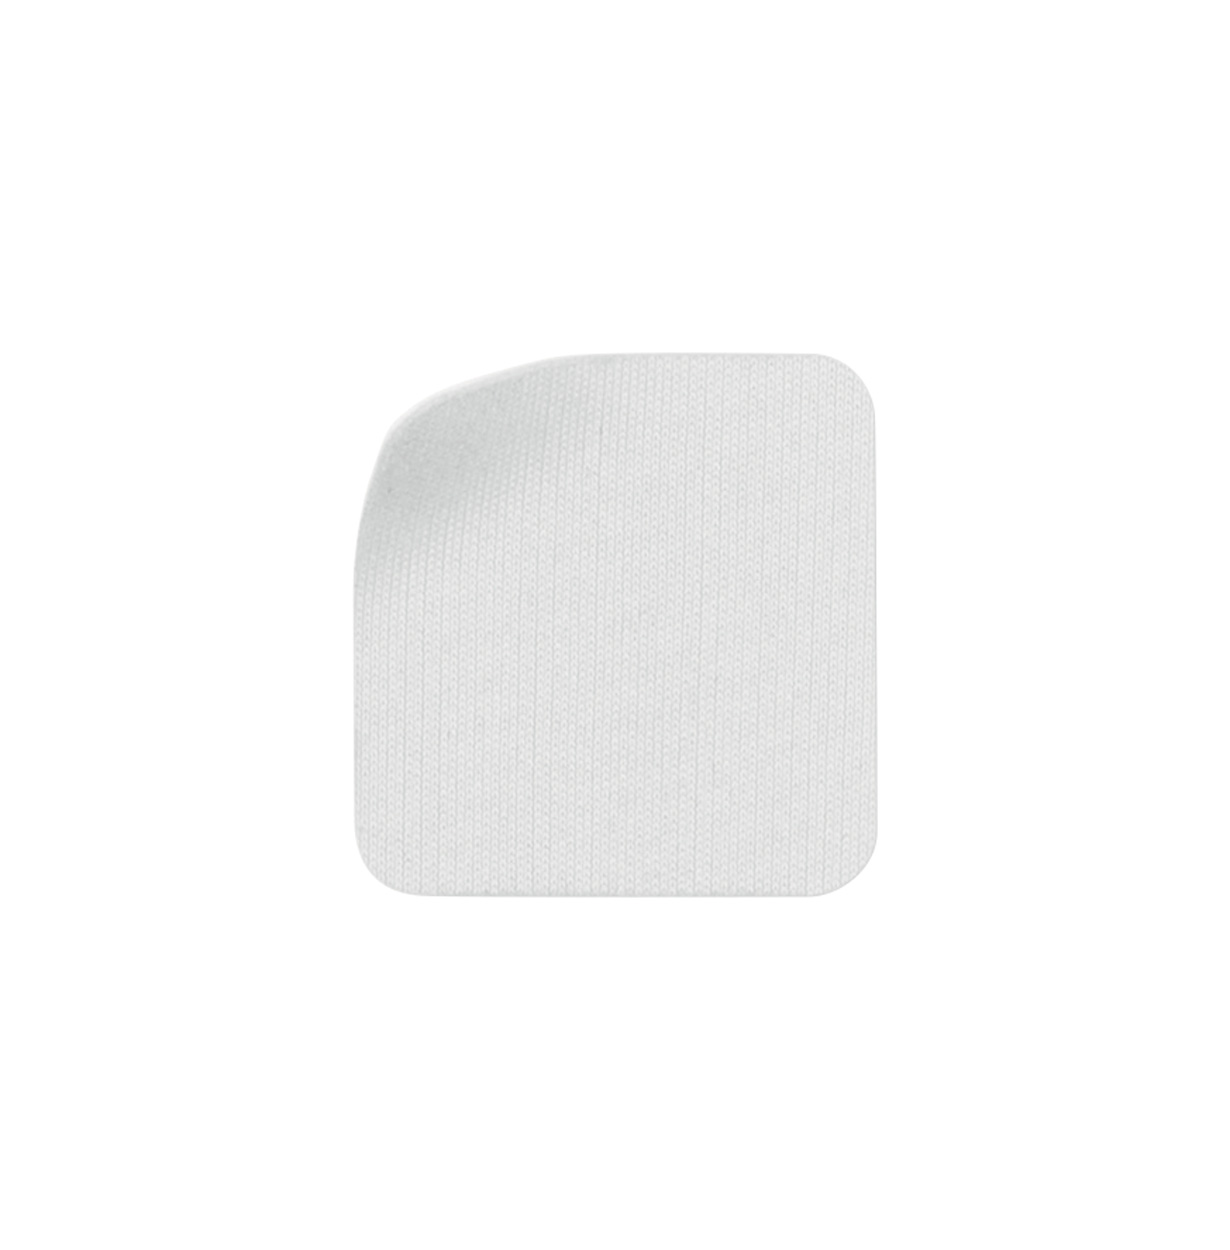 Promo  Nopek samoljepivi čistač mobilnog zaslona od mikrofibera, bijele boje